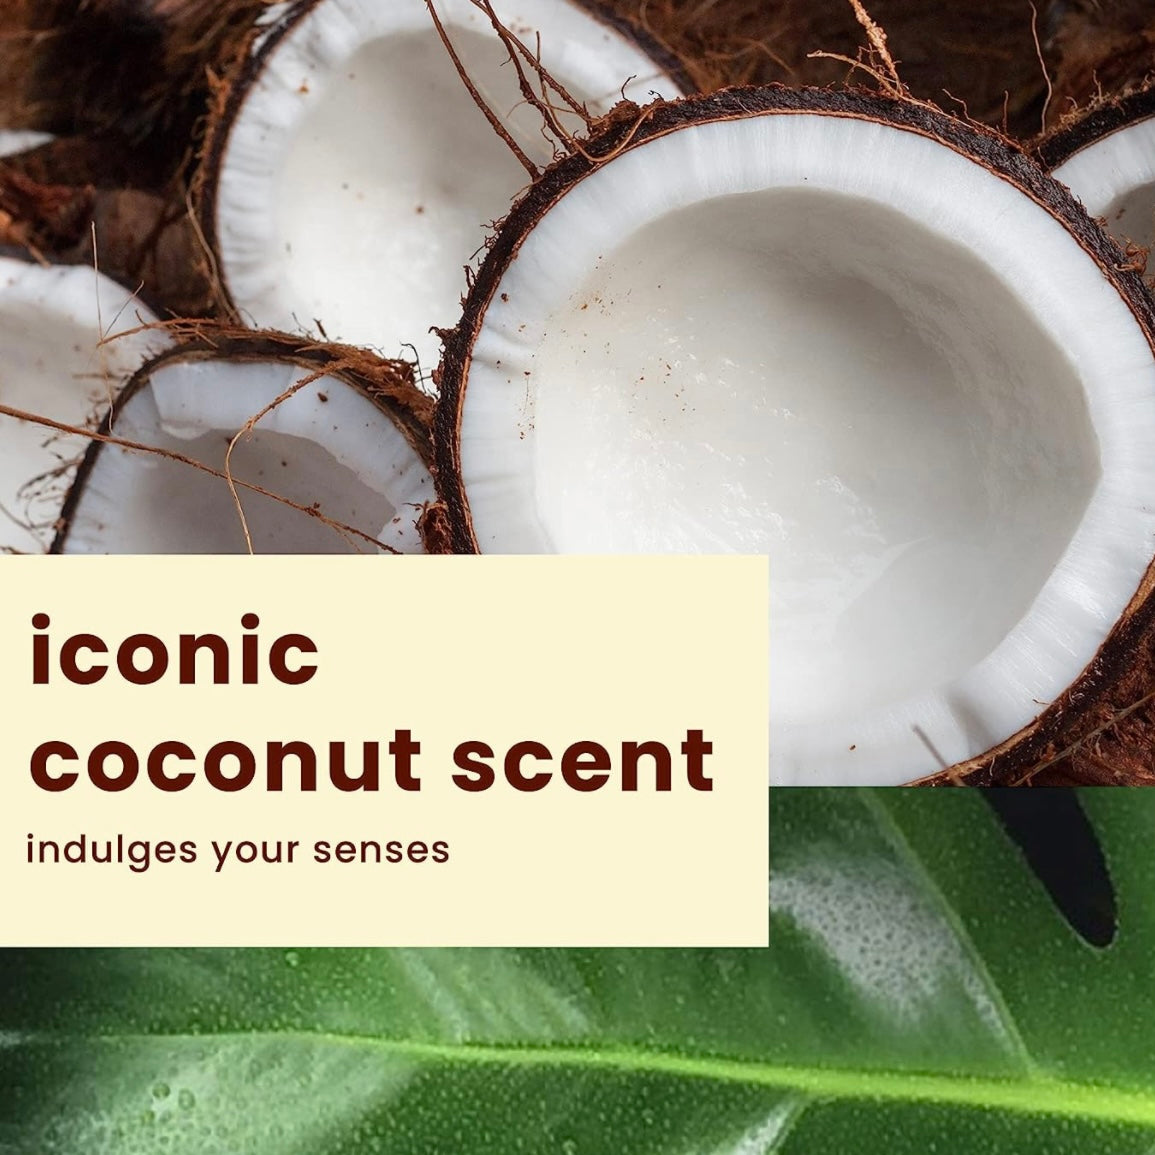 Mantequilla corporal cremosa de coco exótico Hawaiian Tropic para después del sol, 8 oz.